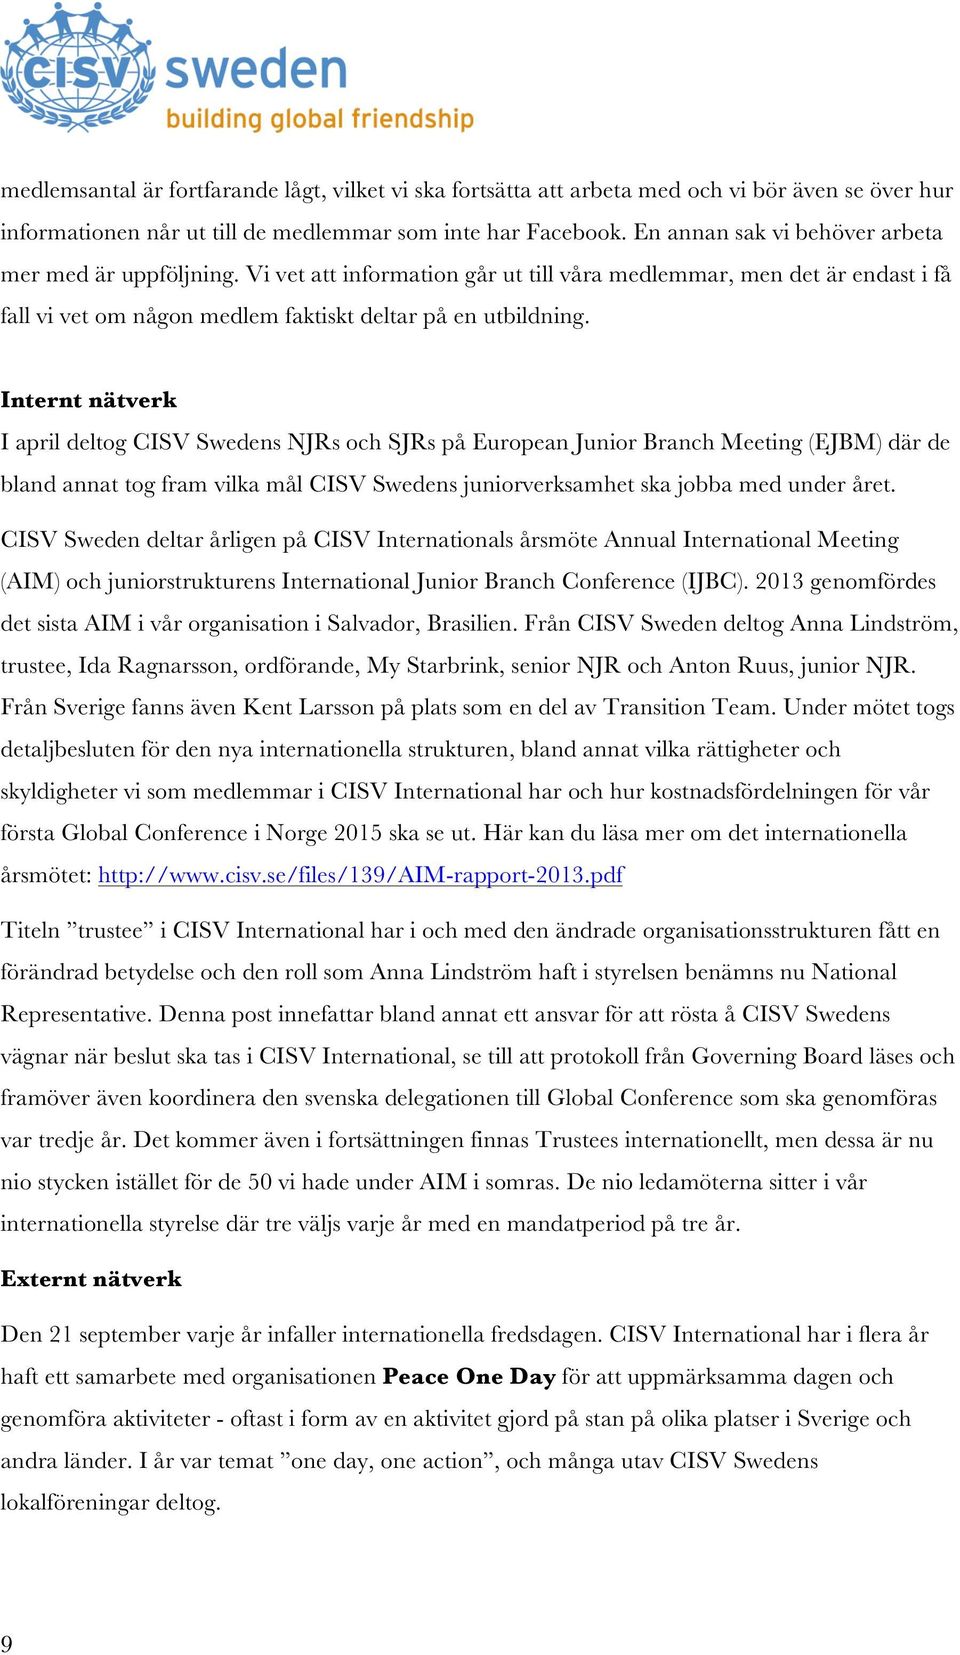 Internt nätverk I april deltog CISV Swedens NJRs och SJRs på European Junior Branch Meeting (EJBM) där de bland annat tog fram vilka mål CISV Swedens juniorverksamhet ska jobba med under året.